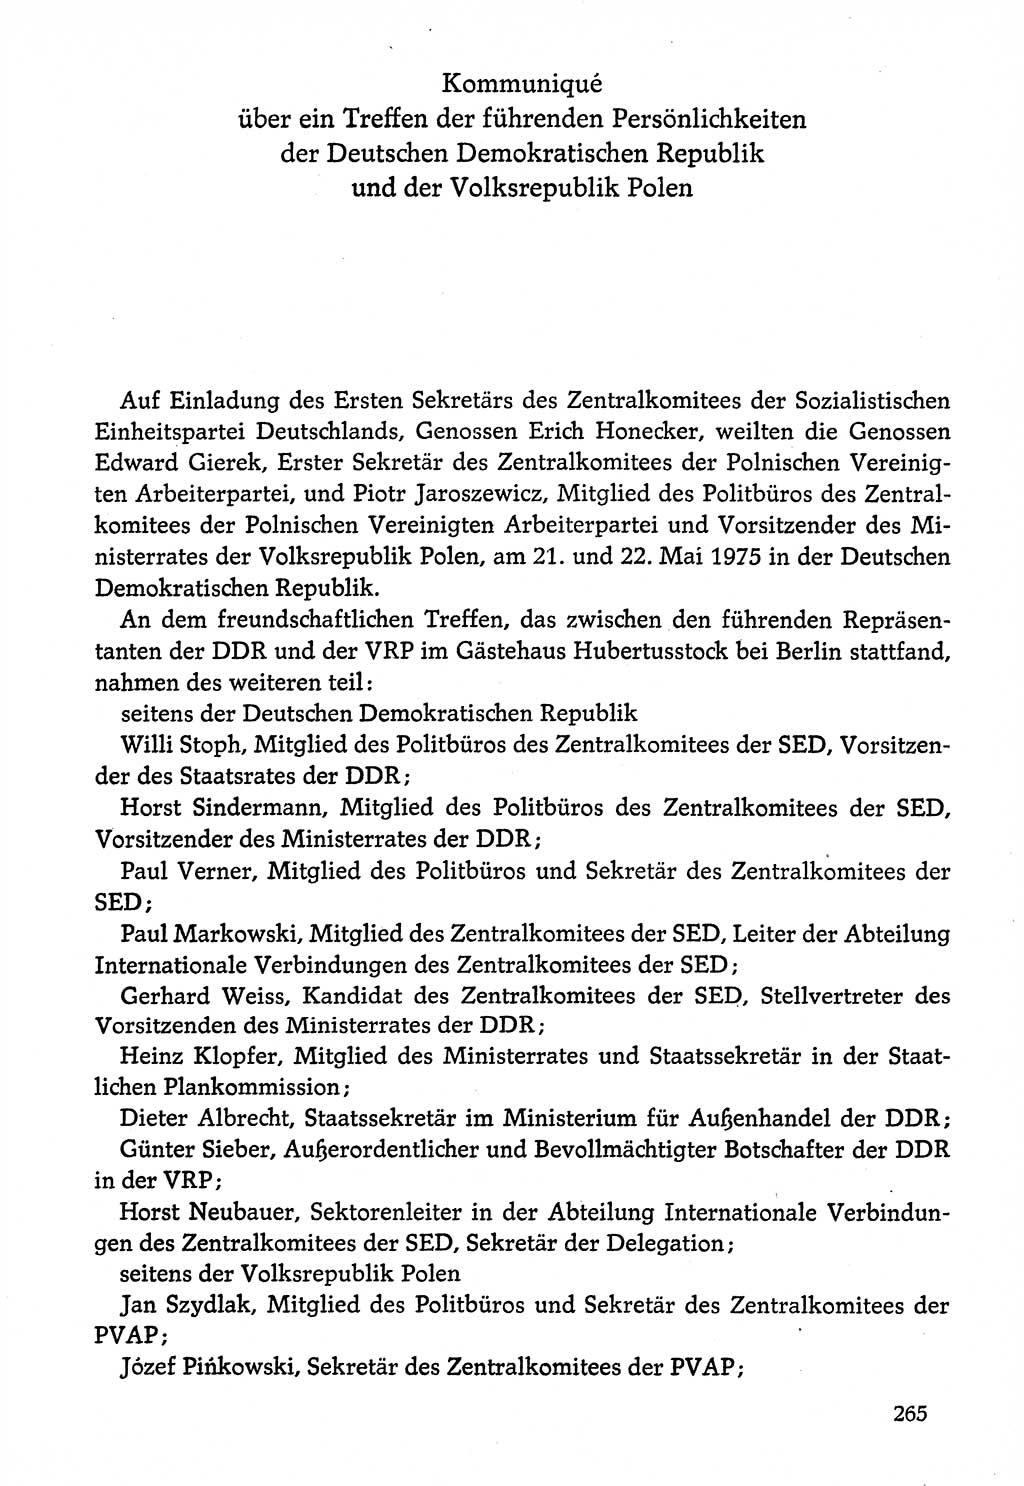 Dokumente der Sozialistischen Einheitspartei Deutschlands (SED) [Deutsche Demokratische Republik (DDR)] 1974-1975, Seite 265 (Dok. SED DDR 1978, Bd. ⅩⅤ, S. 265)